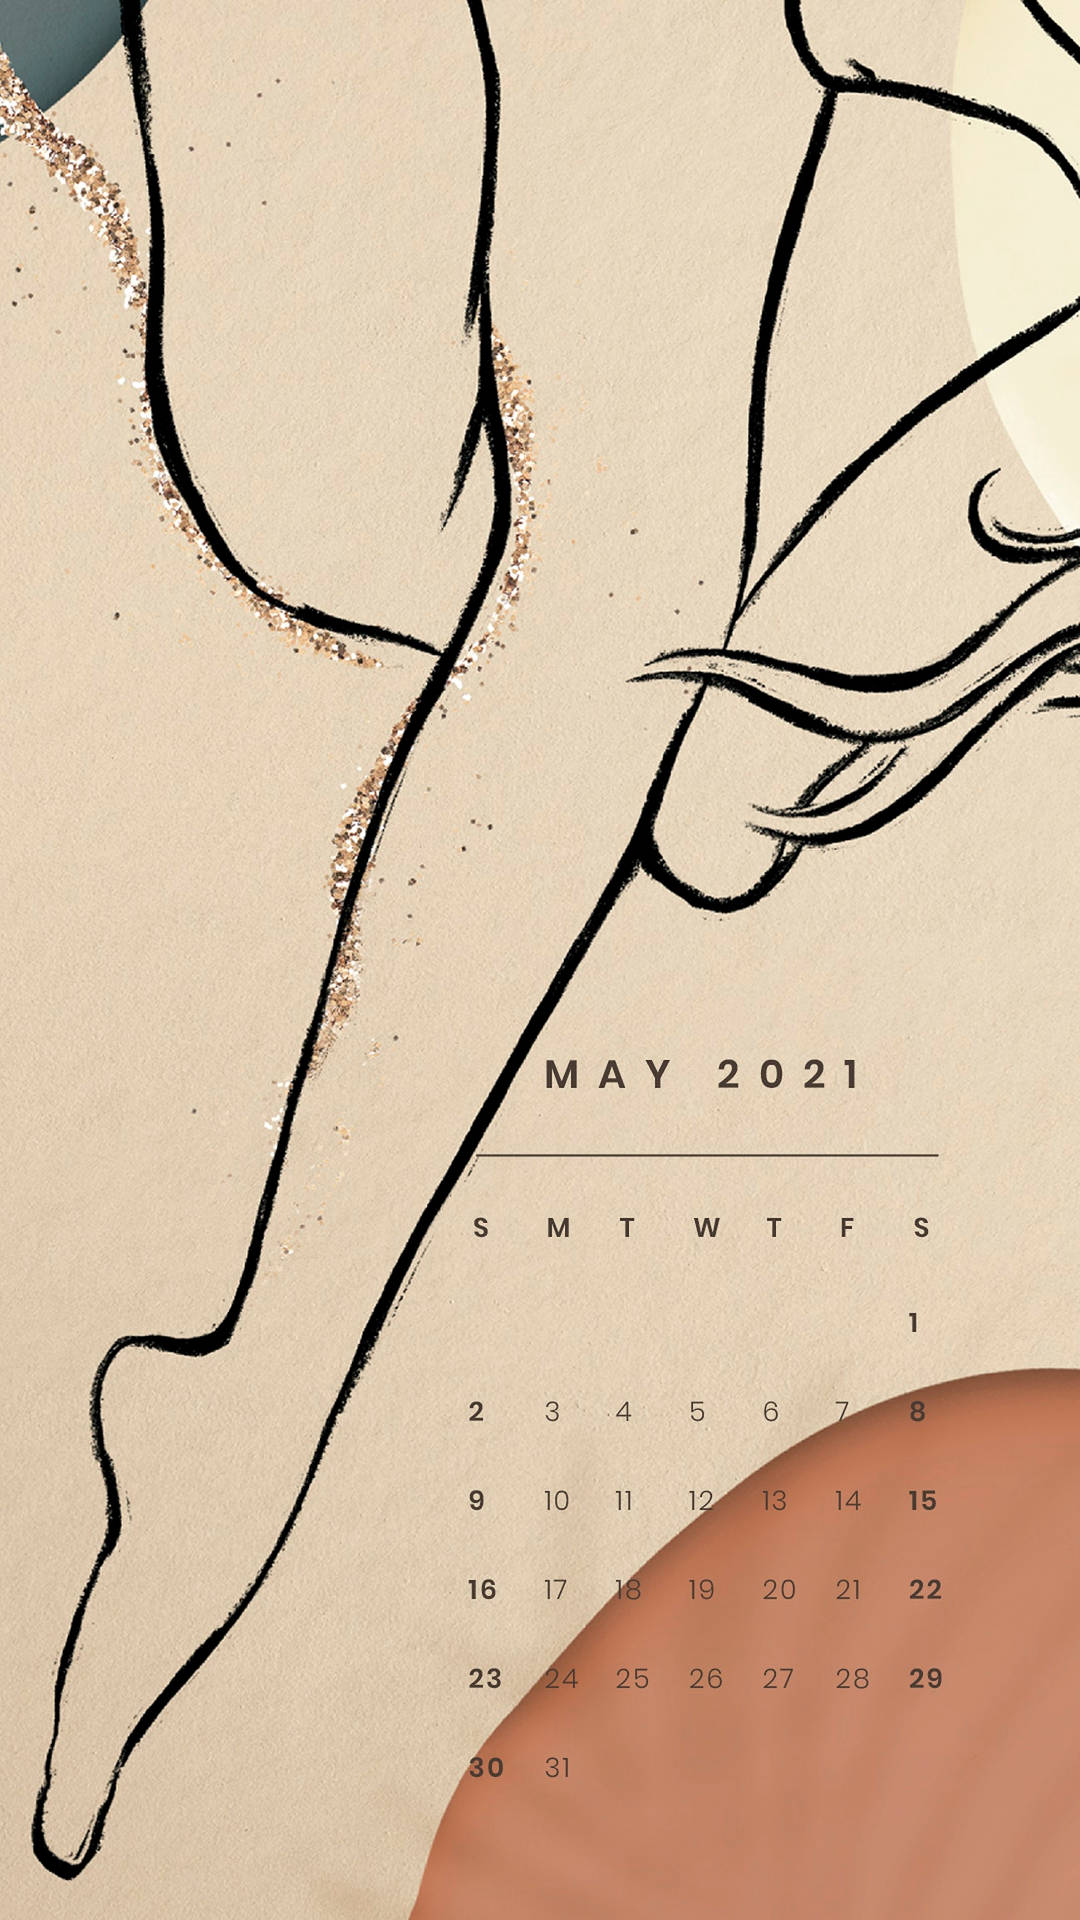 Leg Art Drawing May 2021 Calendar